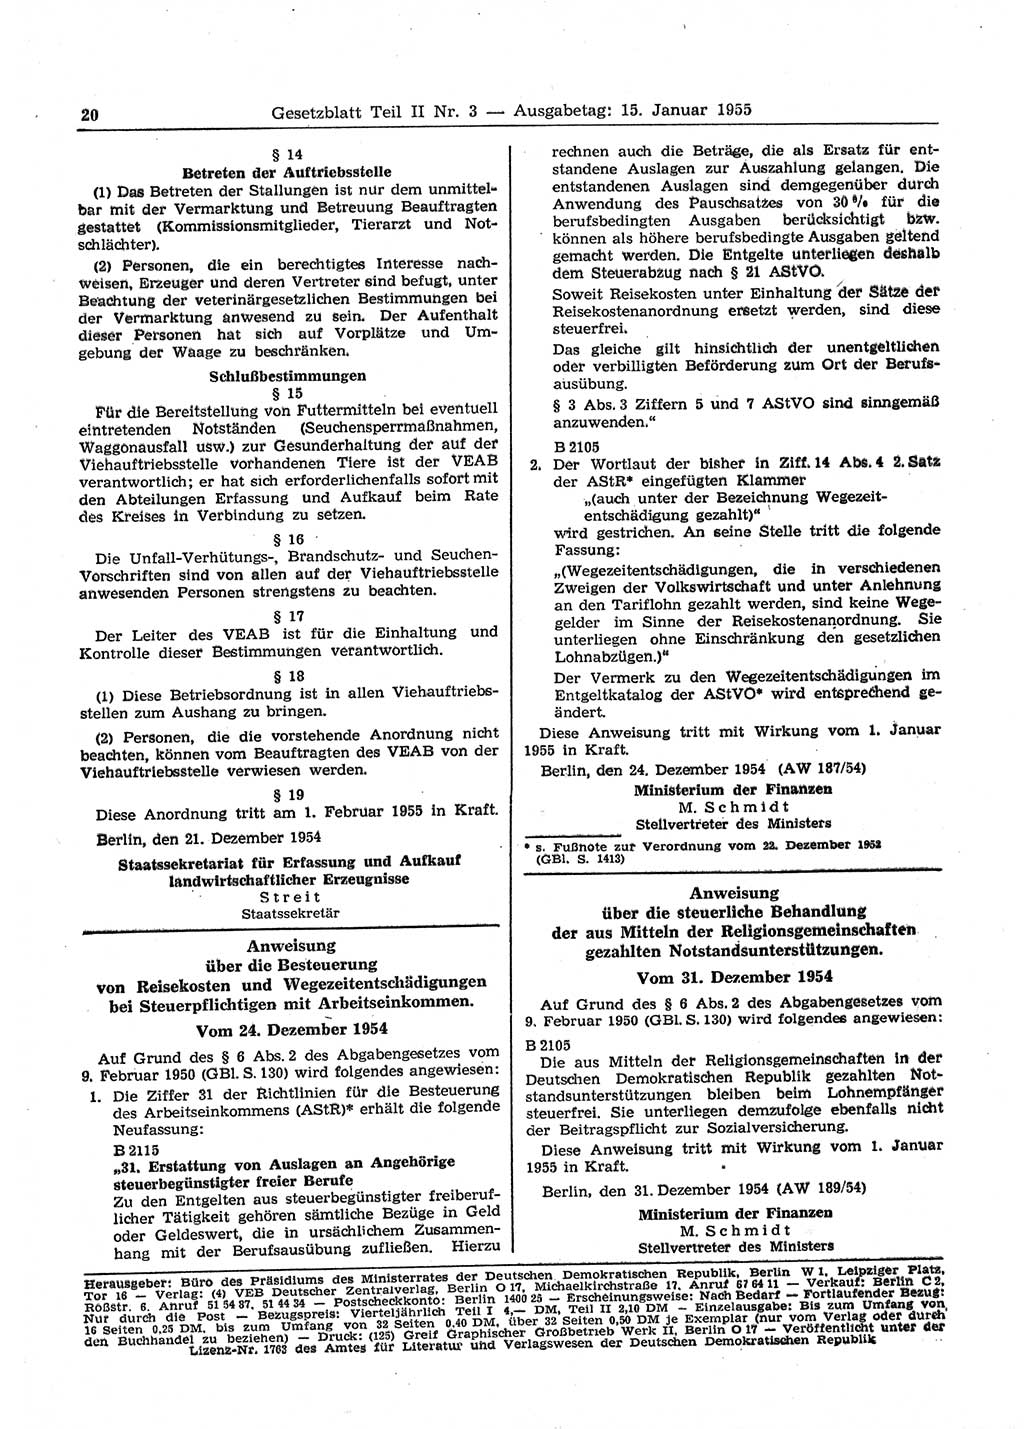 Gesetzblatt (GBl.) der Deutschen Demokratischen Republik (DDR) Teil ⅠⅠ 1955, Seite 20 (GBl. DDR ⅠⅠ 1955, S. 20)